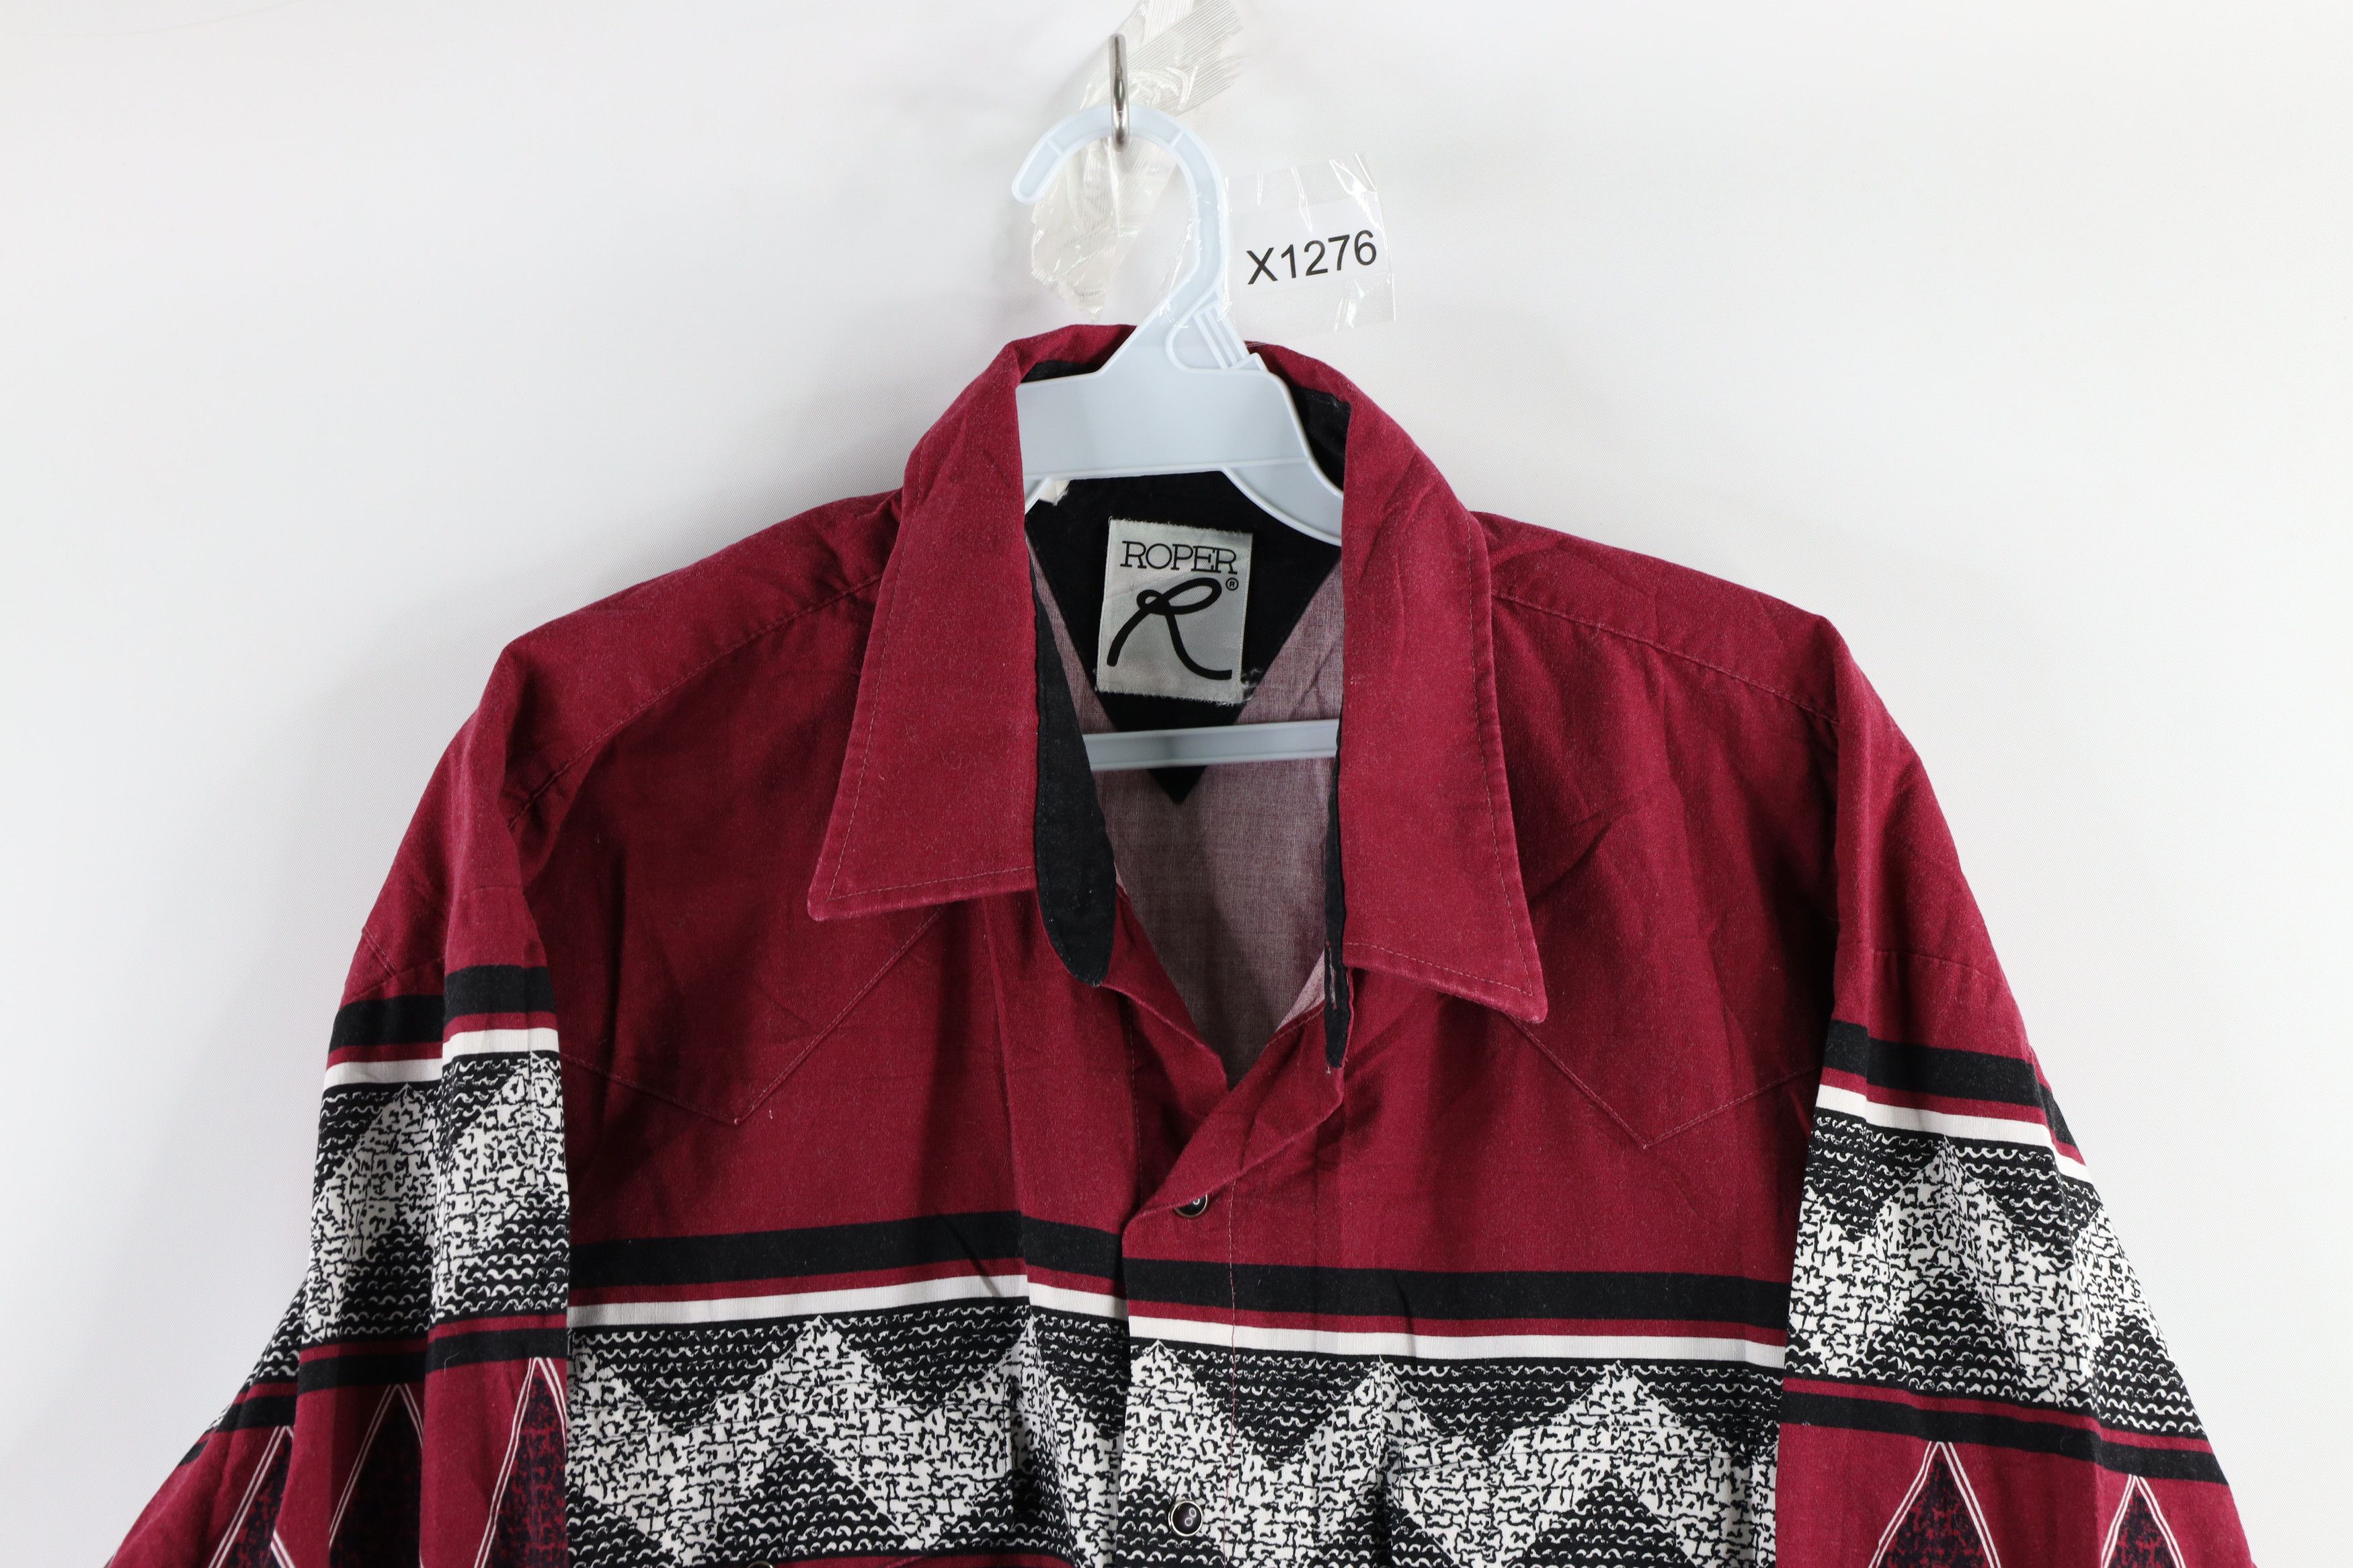 Vintage Vintage 90s Streetwear Southwestern Geometric Button Shirt Size US XL / EU 56 / 4 - 2 Preview